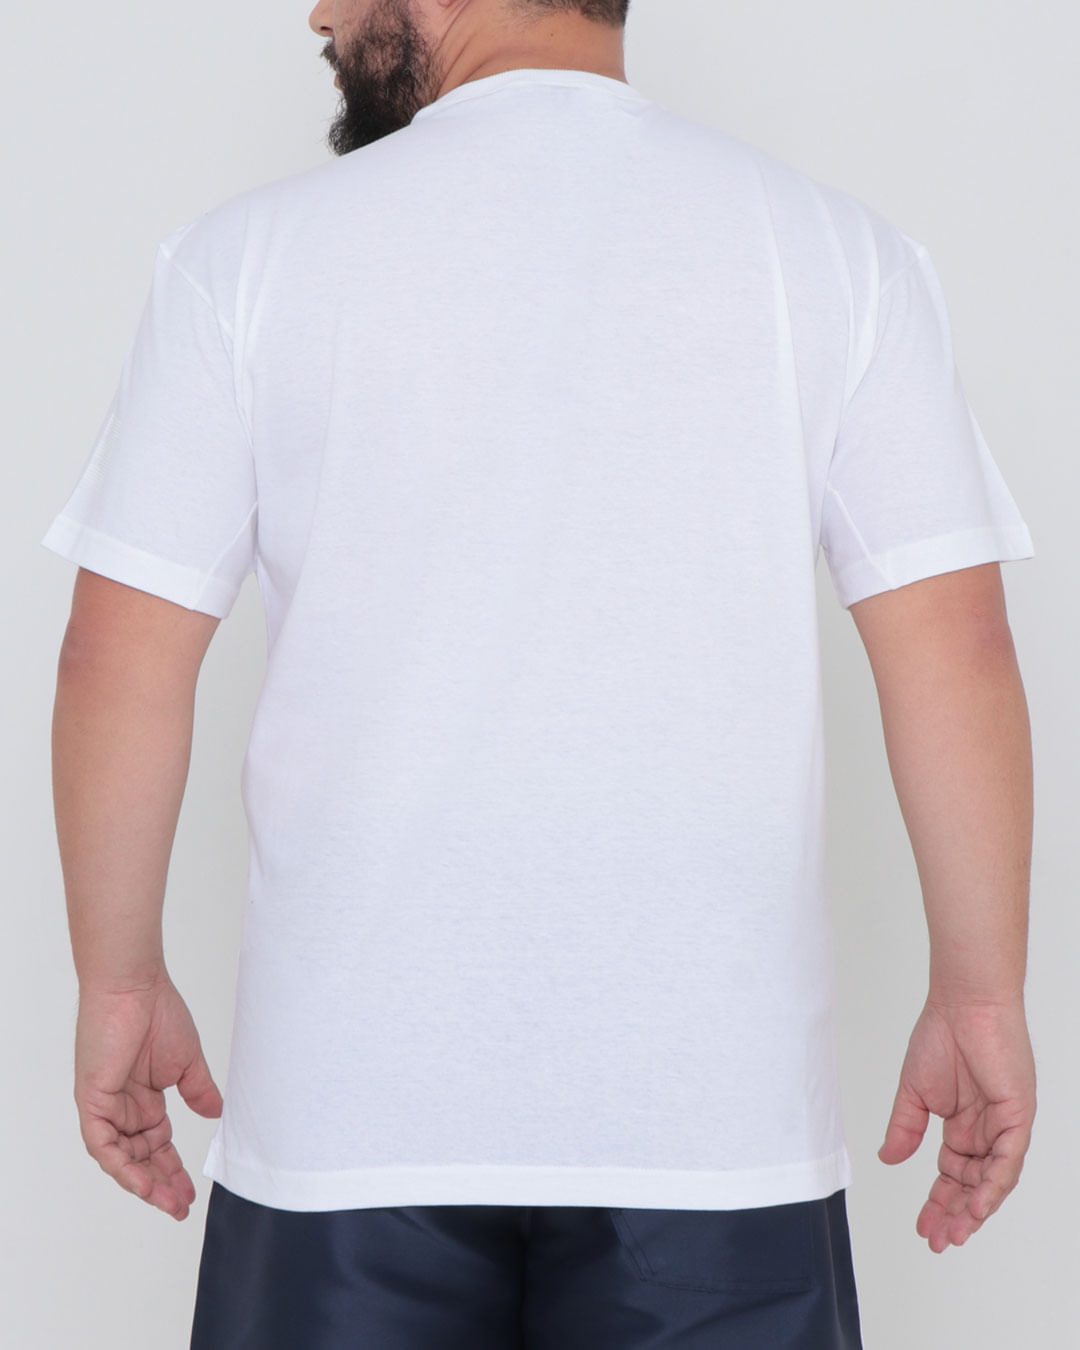 Camiseta-Plus-Size-Estampa-Fatal-Branca